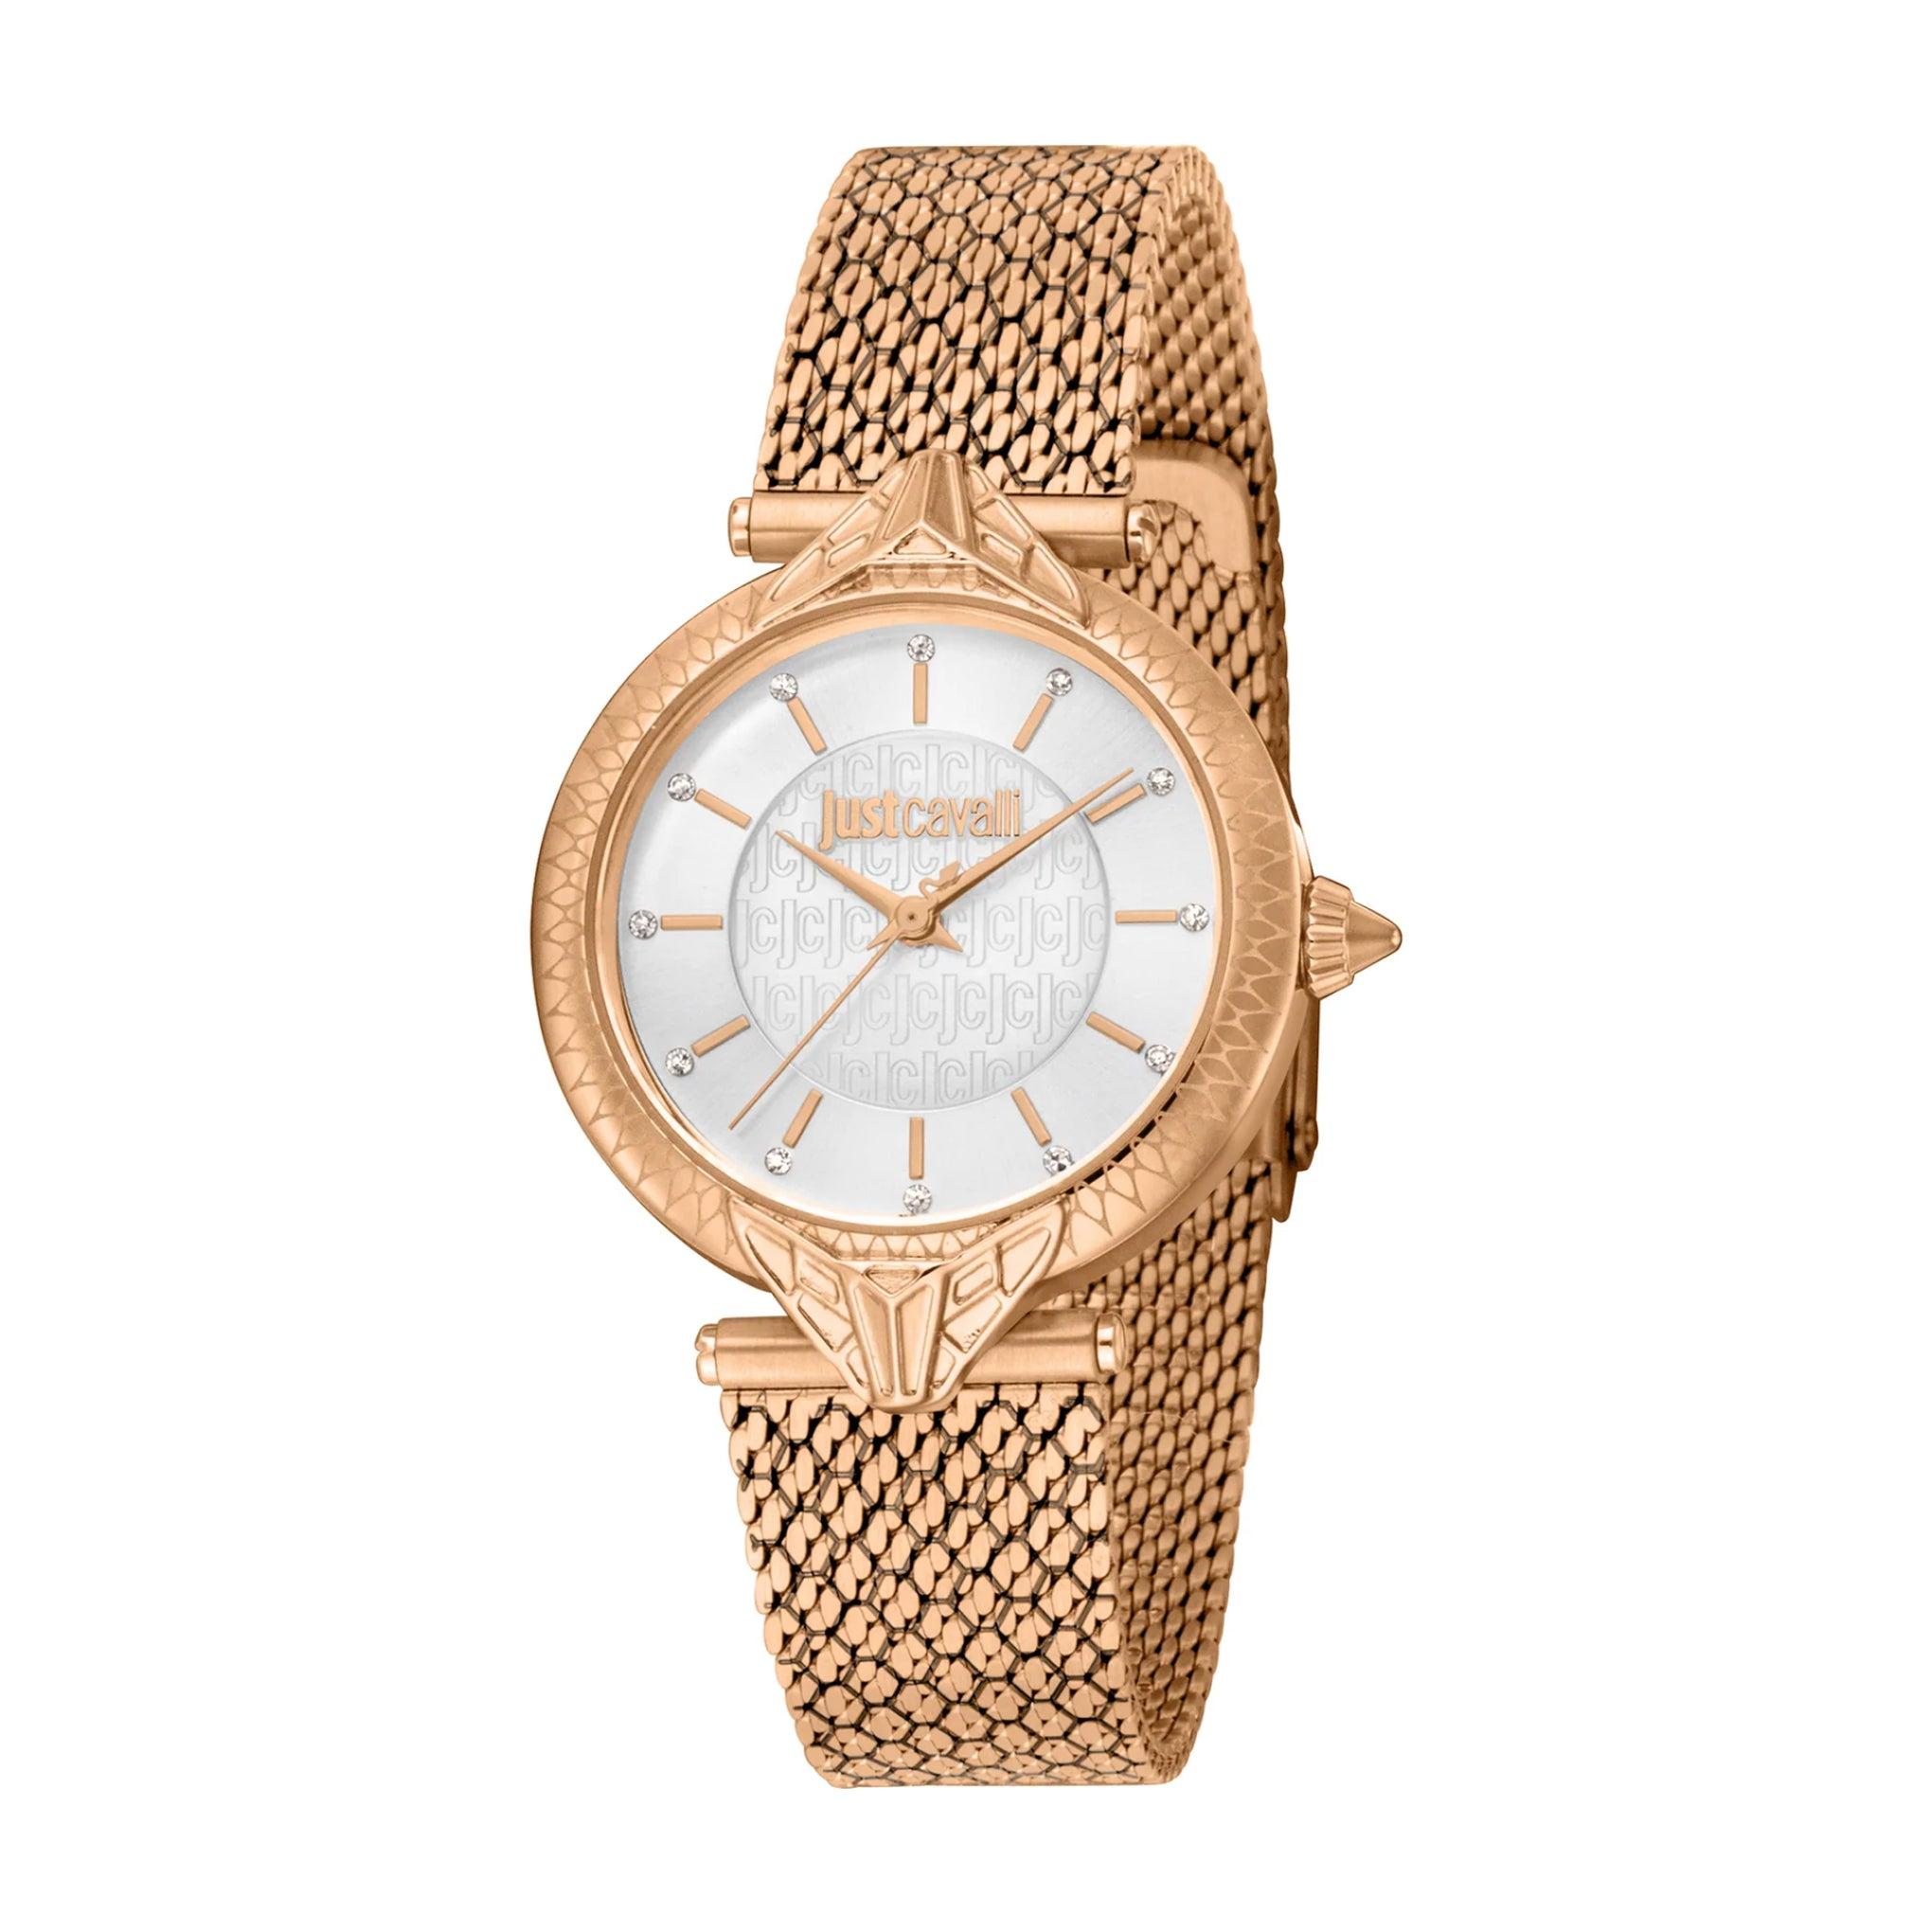 ساعة يد نسائية - ذهبي وردي - بحزام معدني مقاوم للصدأ جست كافالي Just Cavalli Women's Creazione Watch